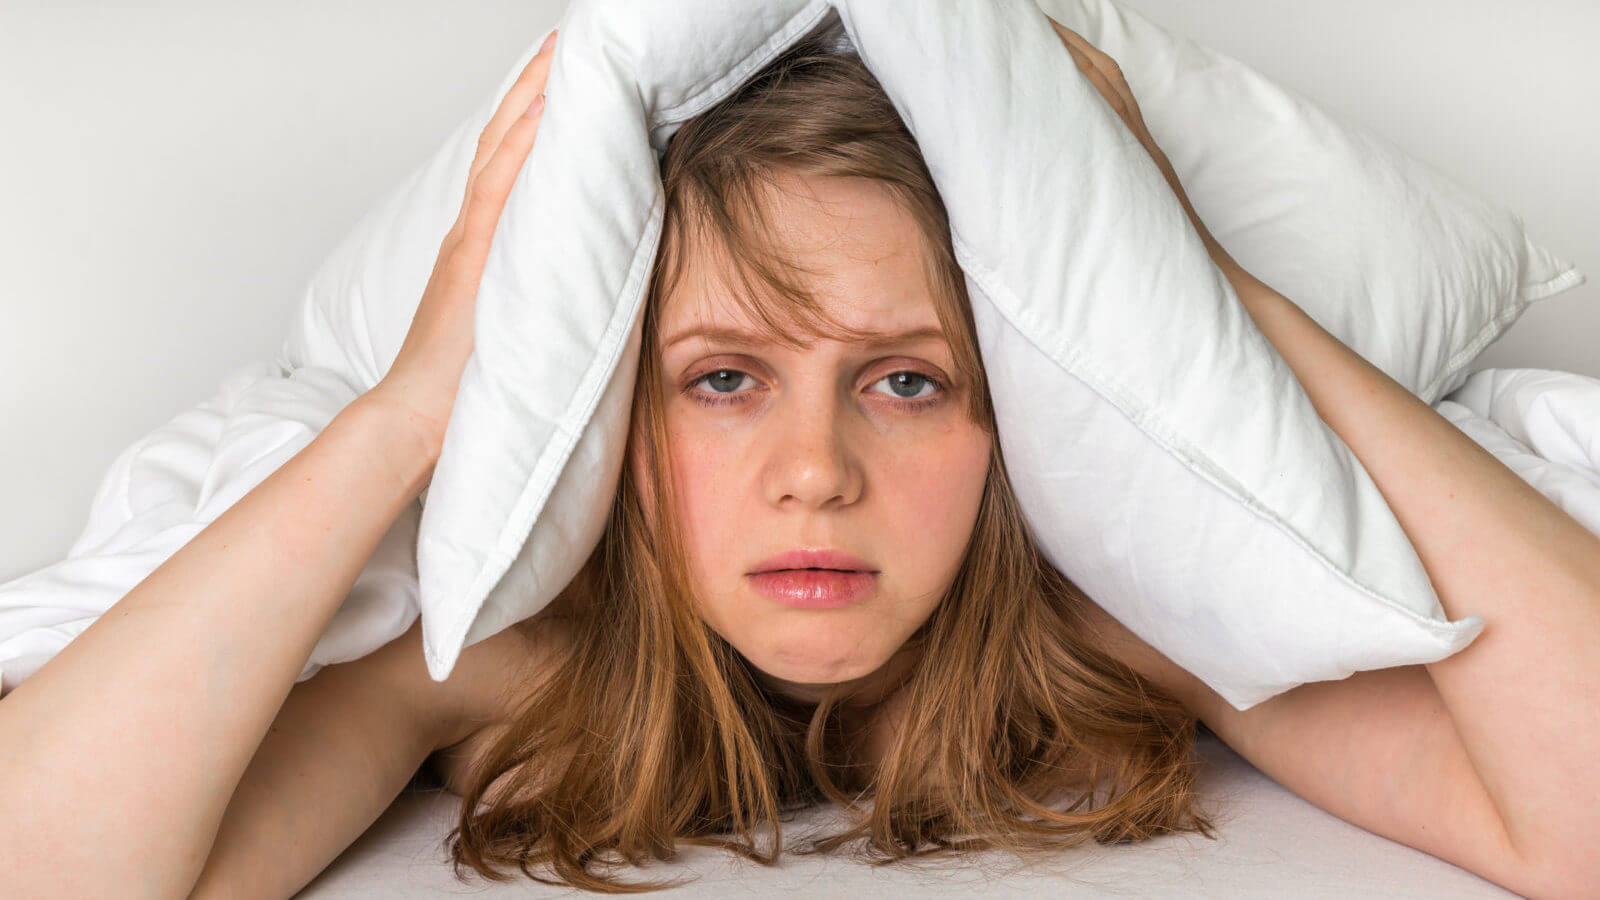 أسباب قلة النوم عند النساء